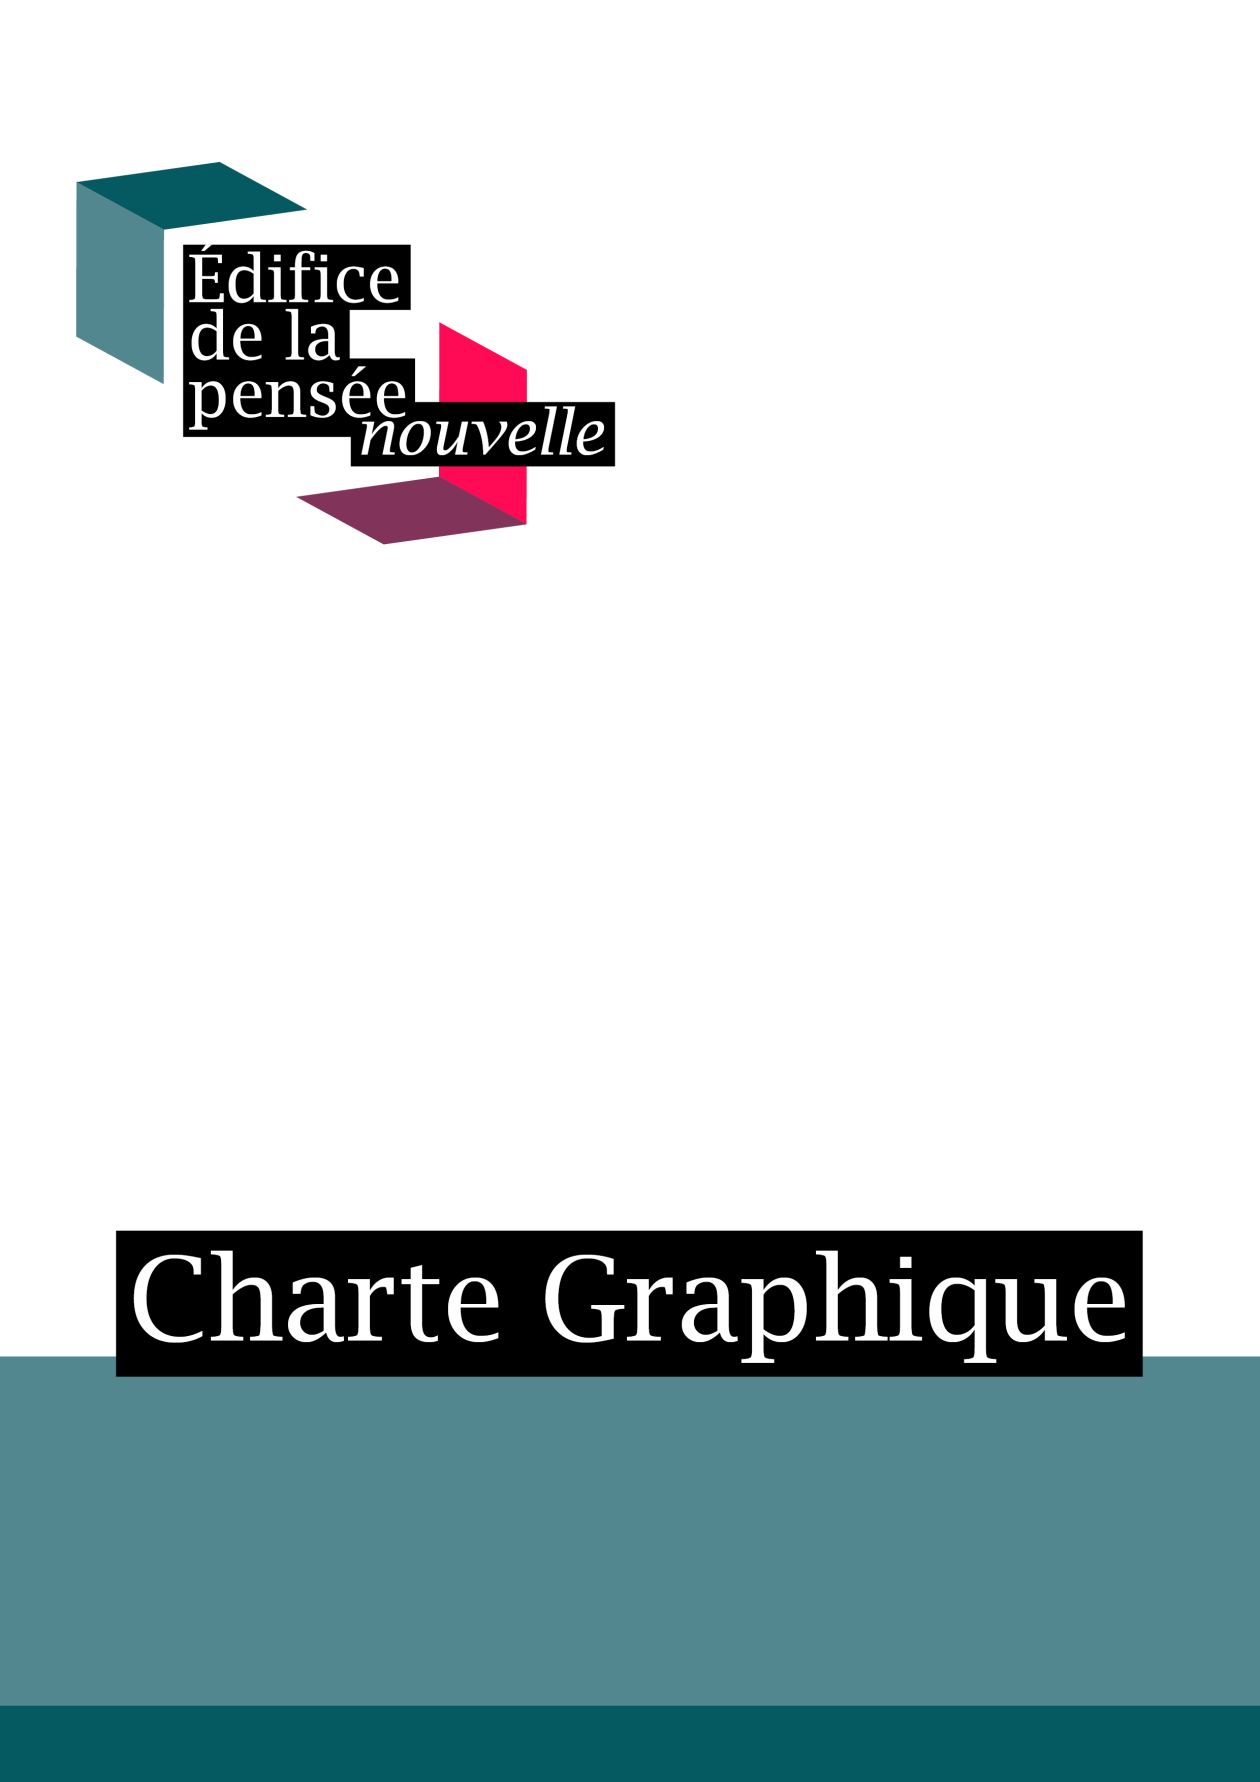 2020 26941 40915 Charte Graphique Edifice De La Pensce Nouvelle